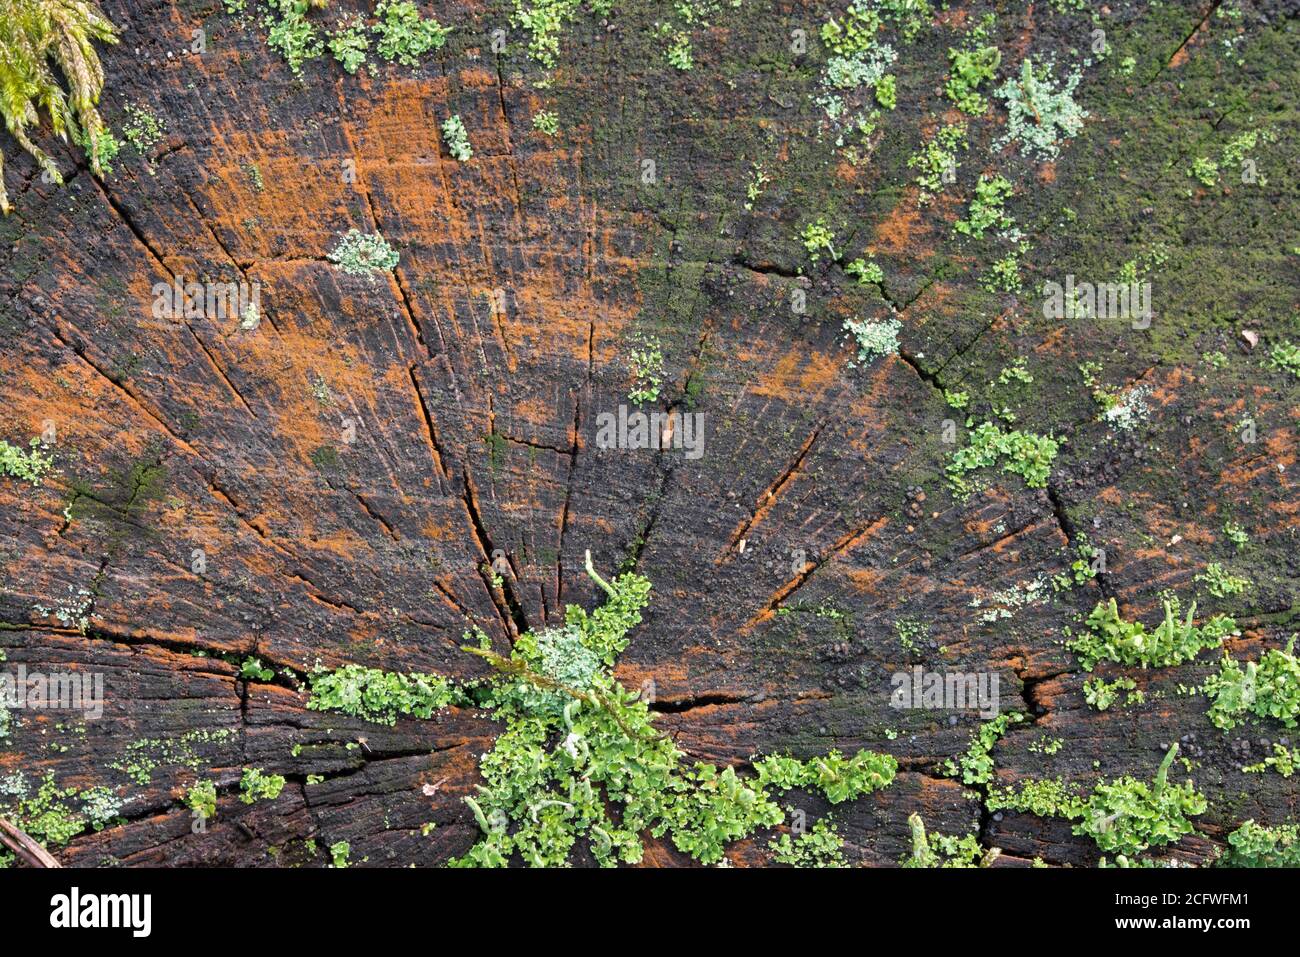 lichen and moss on tree stump closeup Stock Photo